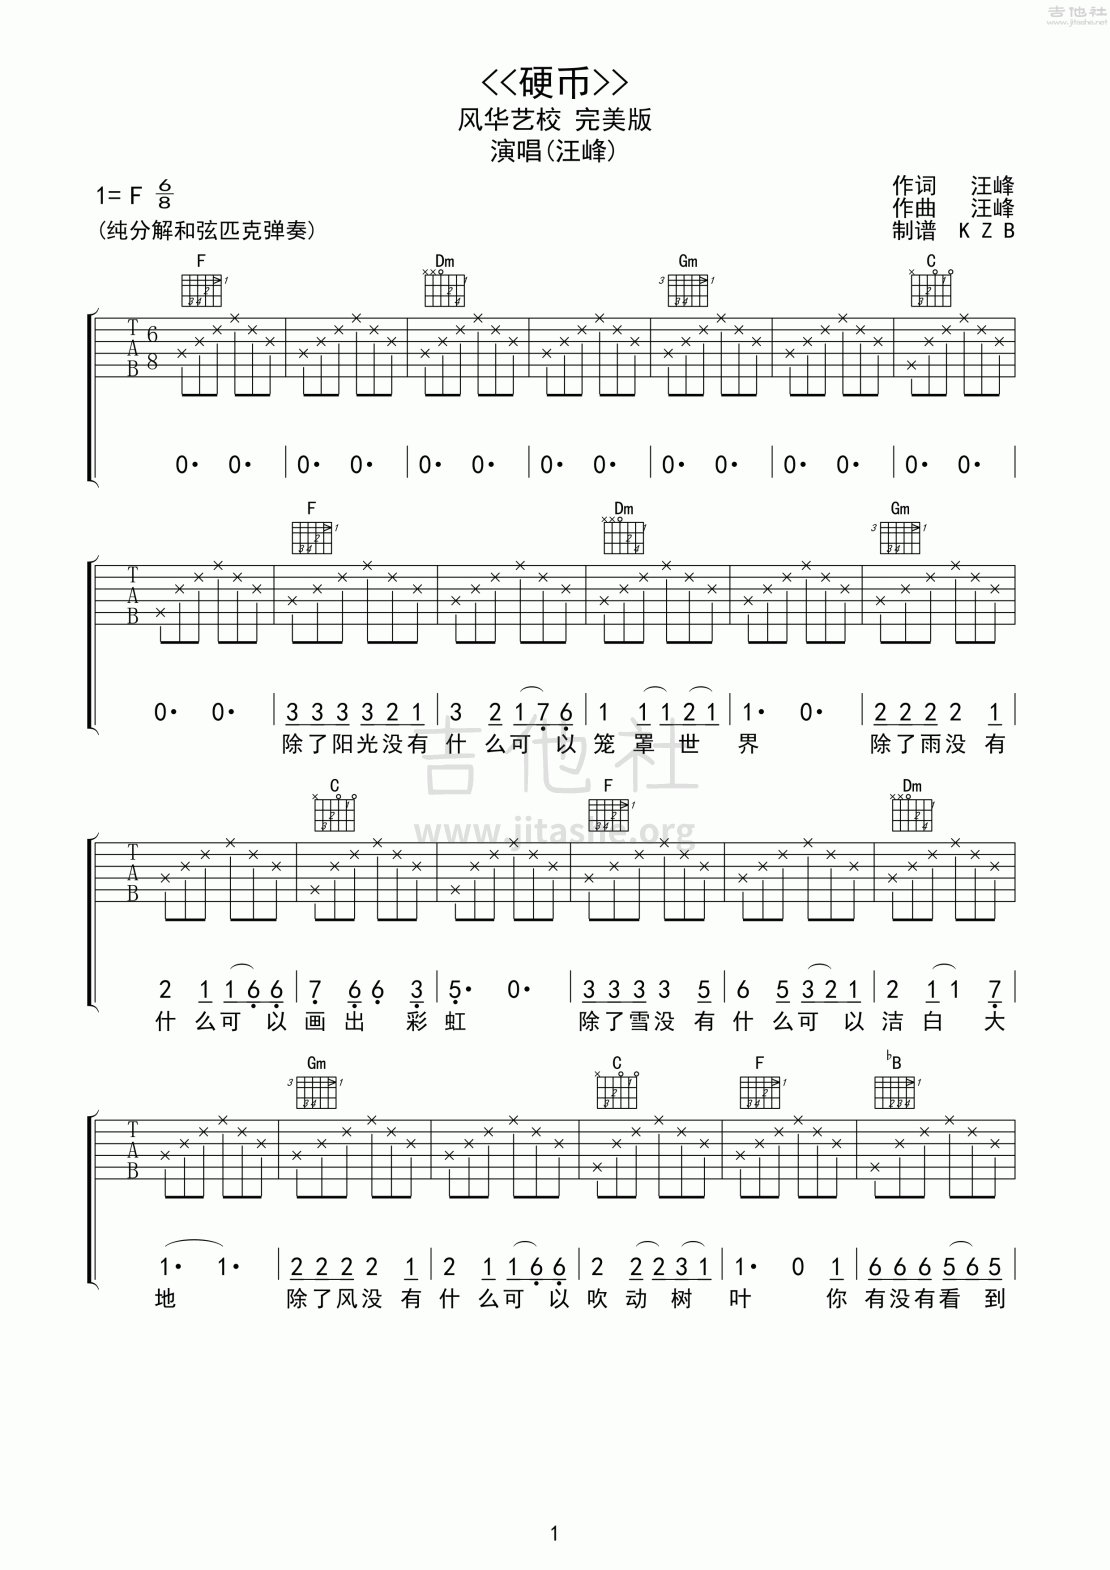 硬币吉他谱(图片谱,弹唱,分解和弦,风华)_汪峰_硬币 高清吉他谱01.gif